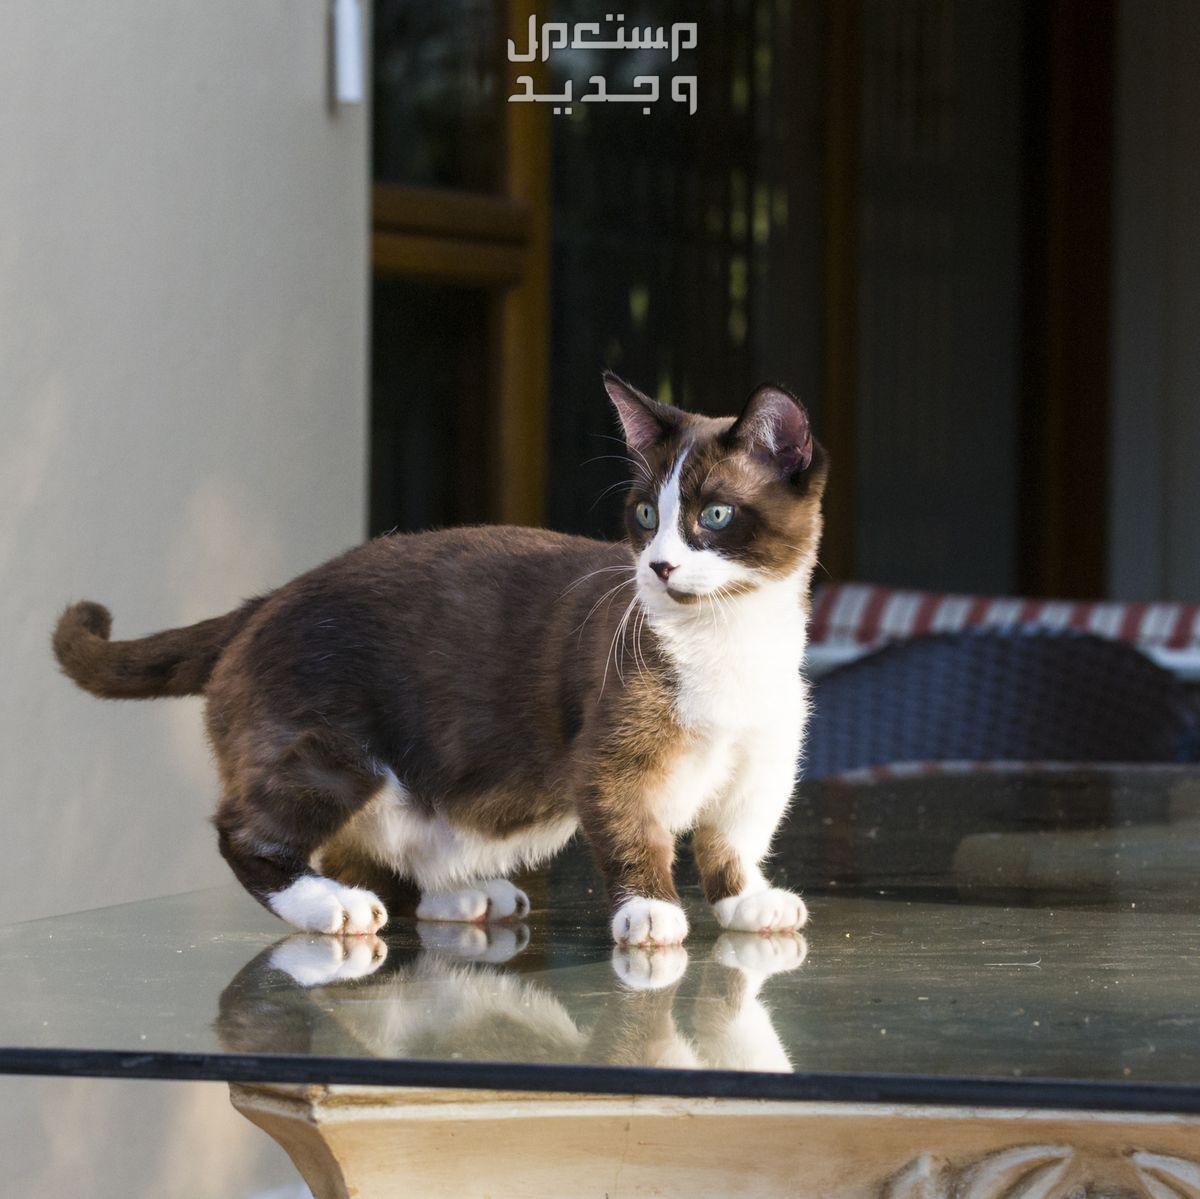 قطط لا تكبر أبدًا - تعرف عليها في الكويت قطة حجمها صغير